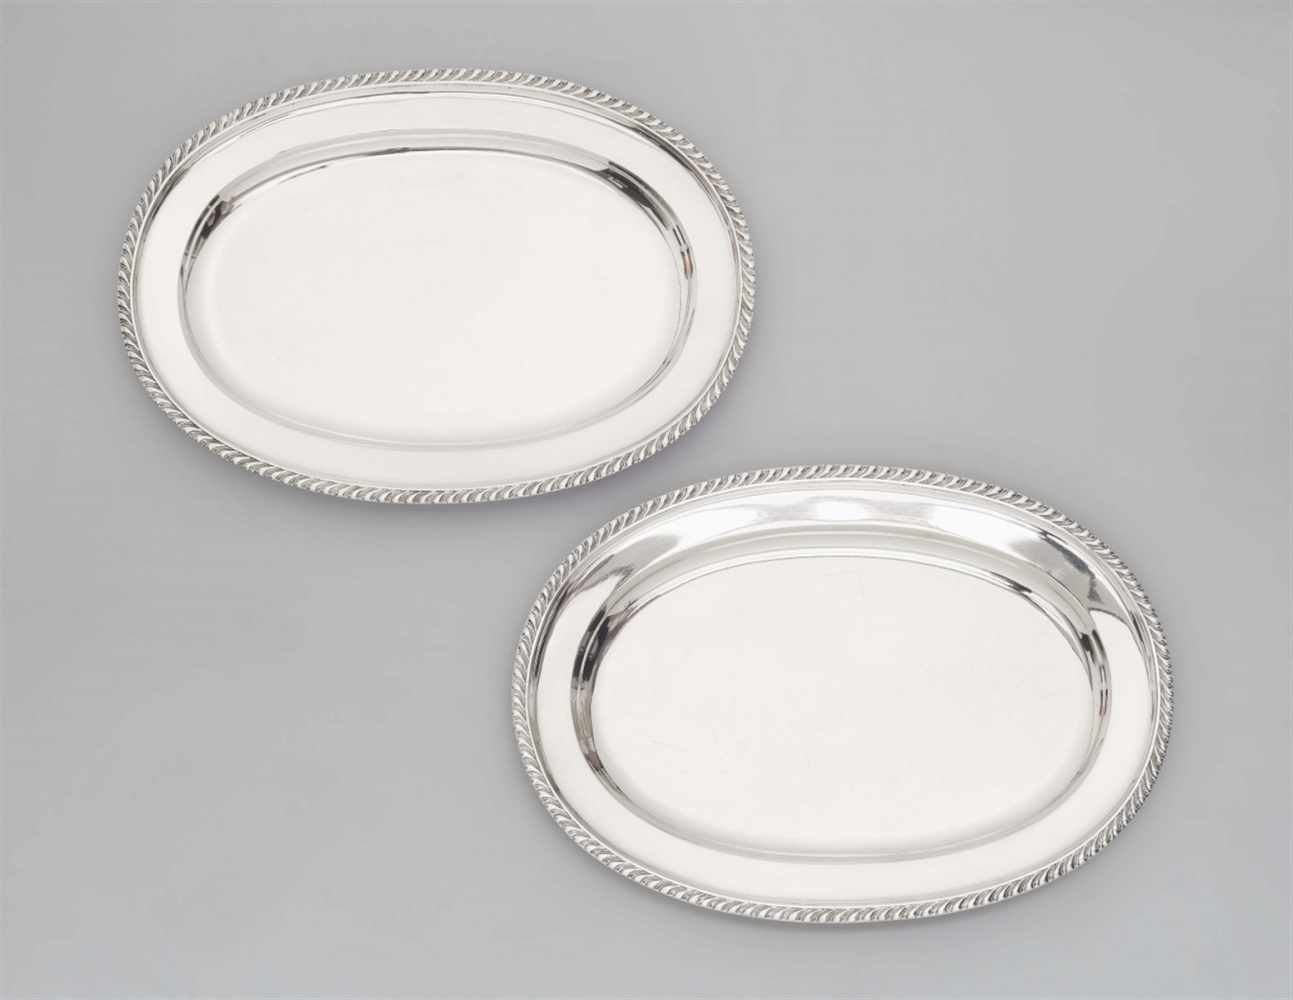 Stockholmer PlattenpaarSilber. Große ovale Platten mit glattem Spiegel; die breite Fahne mit